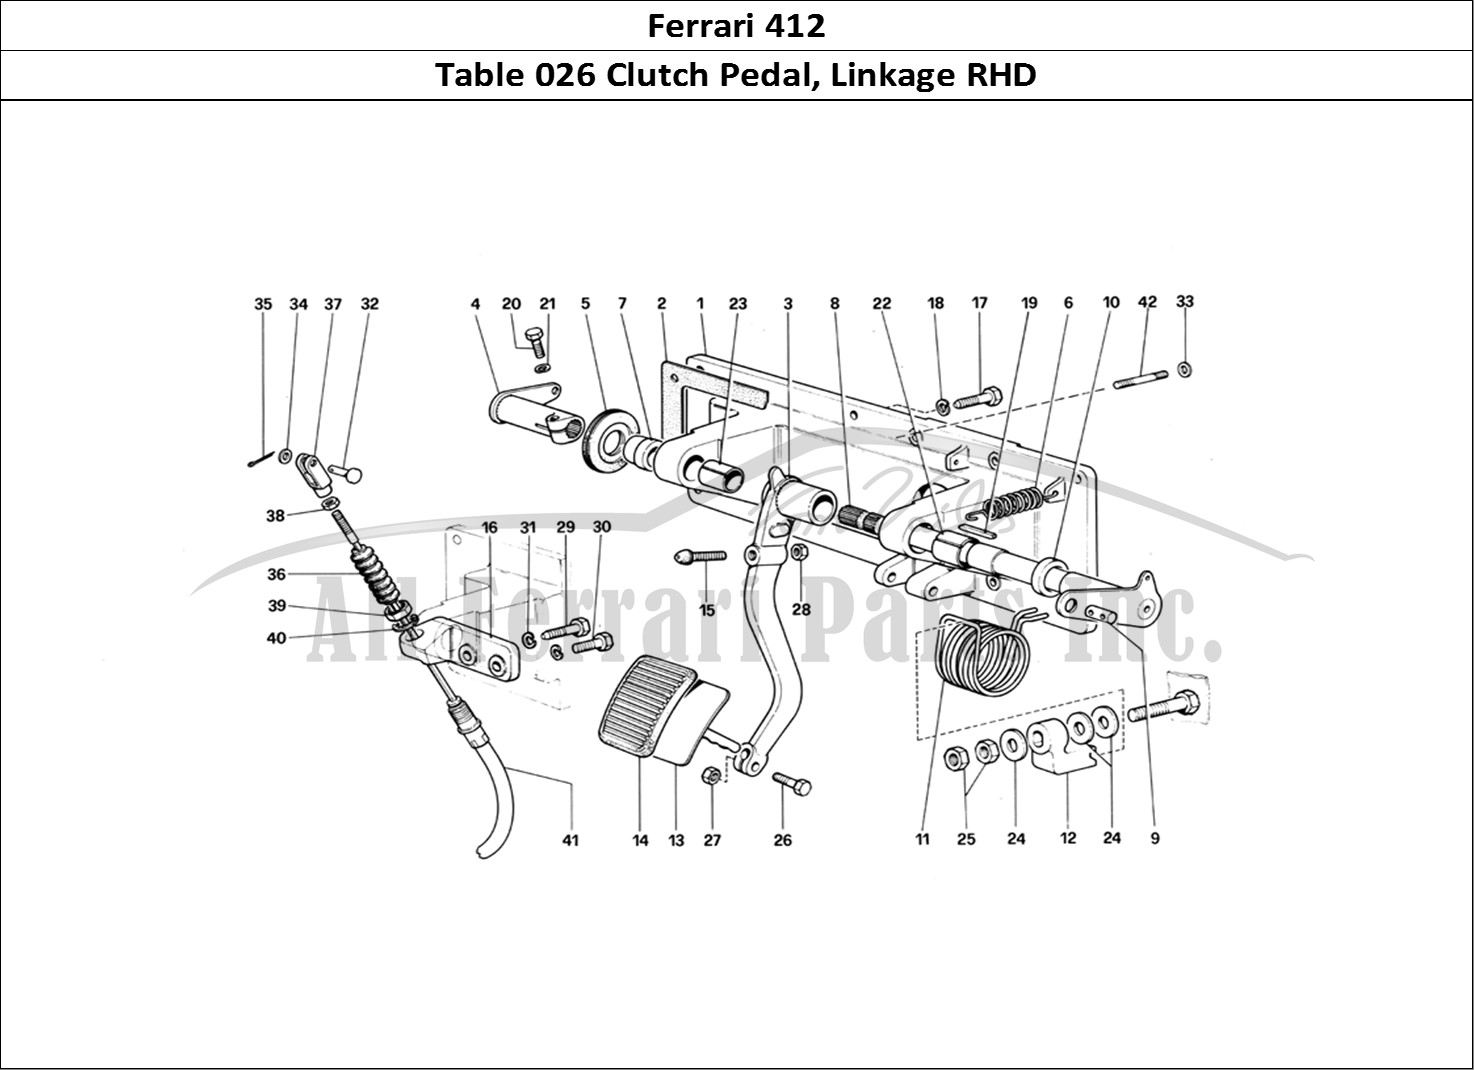 Ferrari Parts Ferrari 412 (Mechanical) Page 026 ClutCH Release Control -